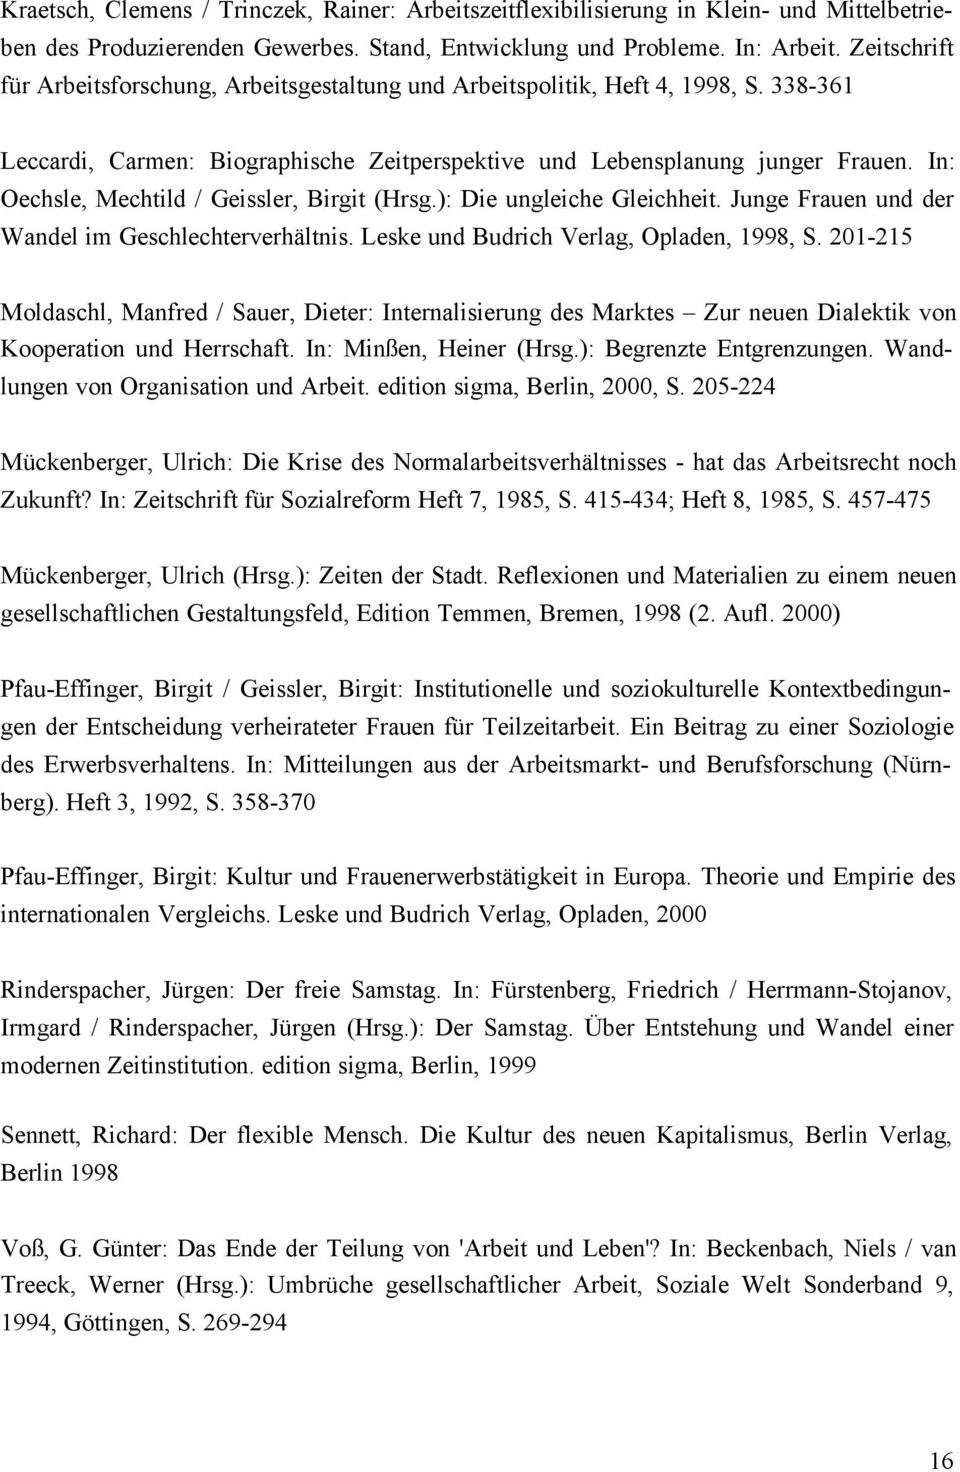 In: Oechsle, Mechtild / Geissler, Birgit (Hrsg.): Die ungleiche Gleichheit. Junge Frauen und der Wandel im Geschlechterverhältnis. Leske und Budrich Verlag, Opladen, 1998, S.